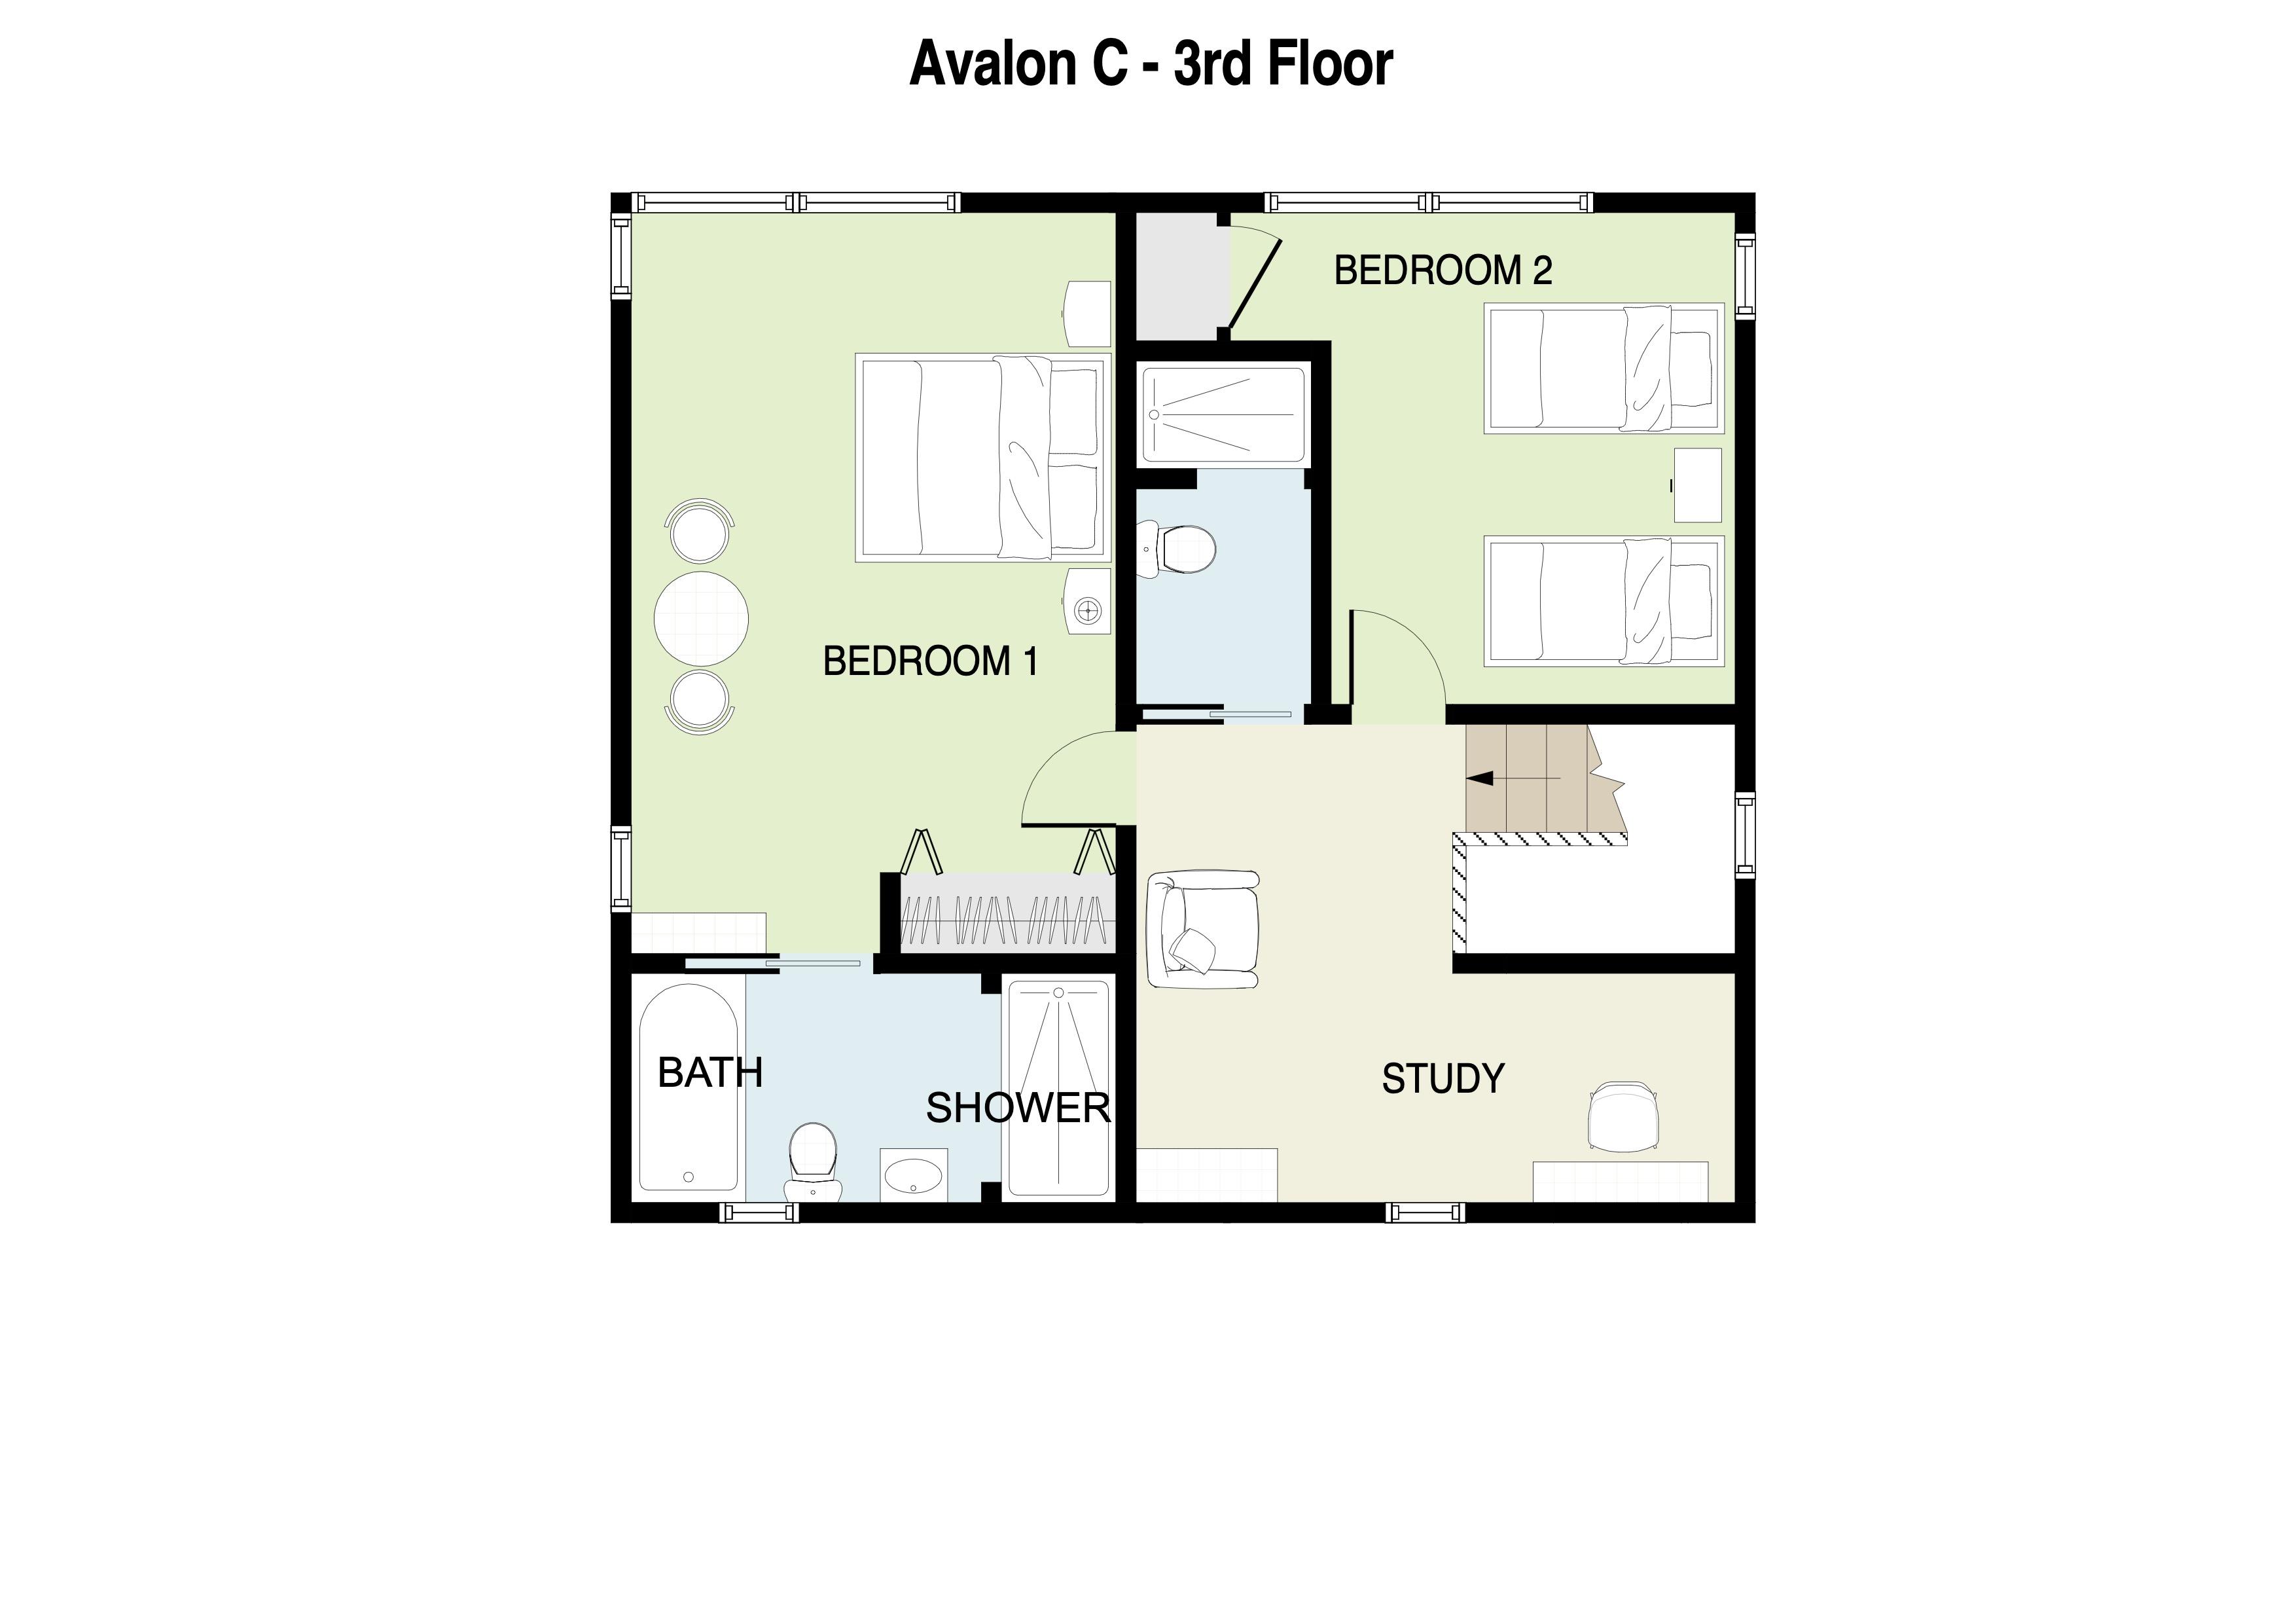 Avalon C 3rd floor plans